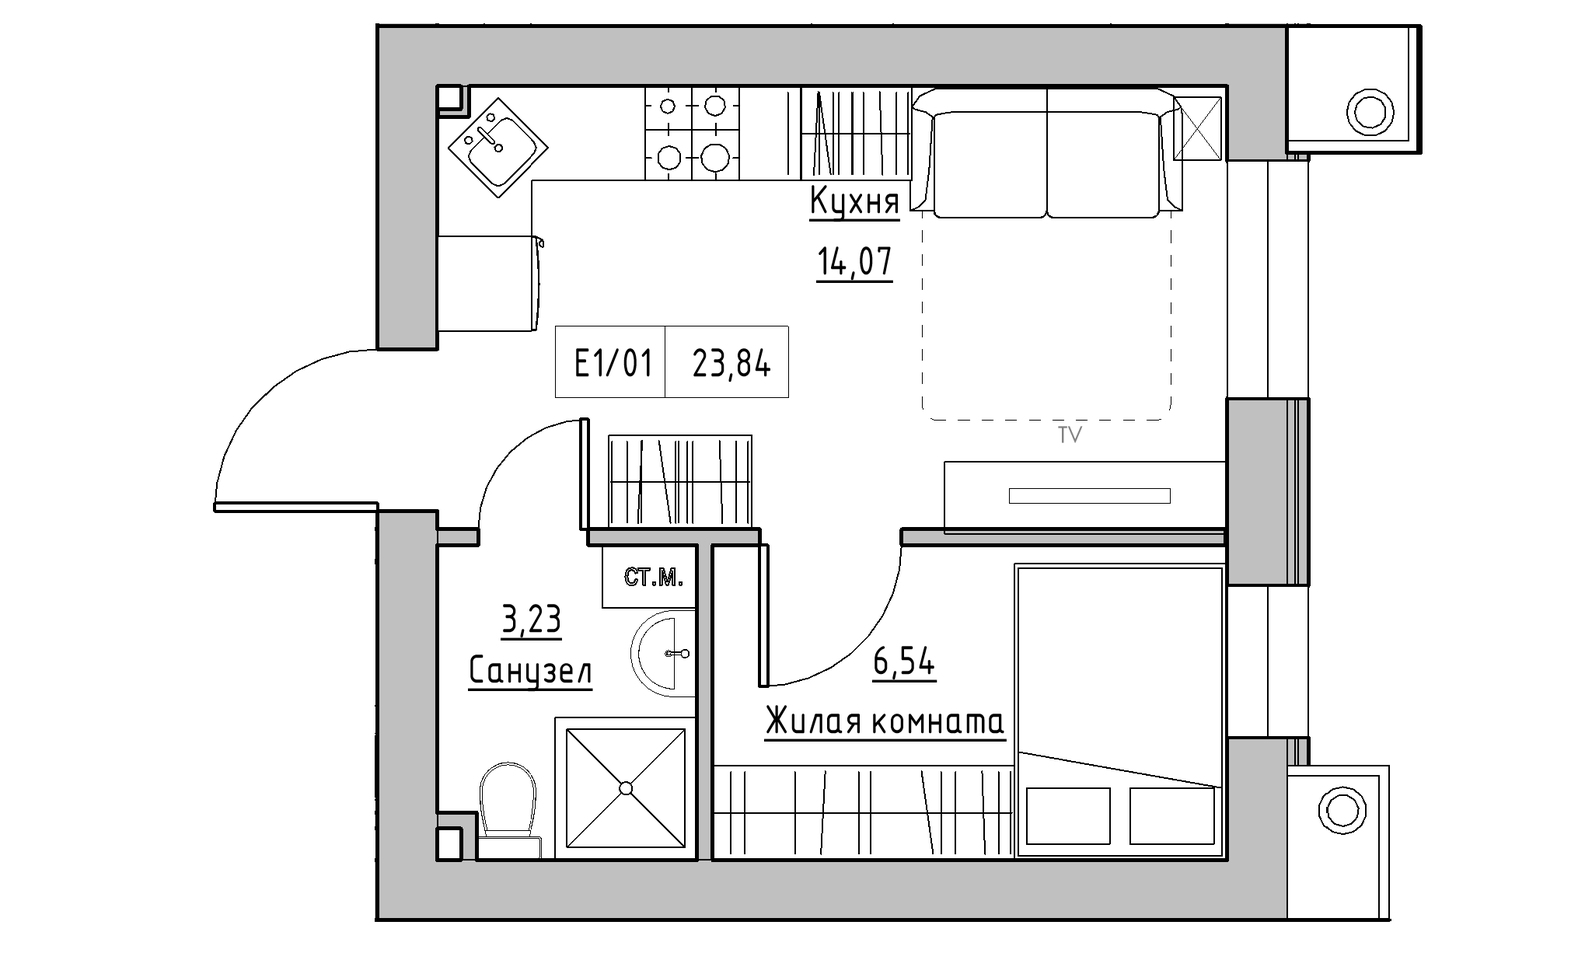 Планування 1-к квартира площею 23.84м2, KS-014-04/0011.